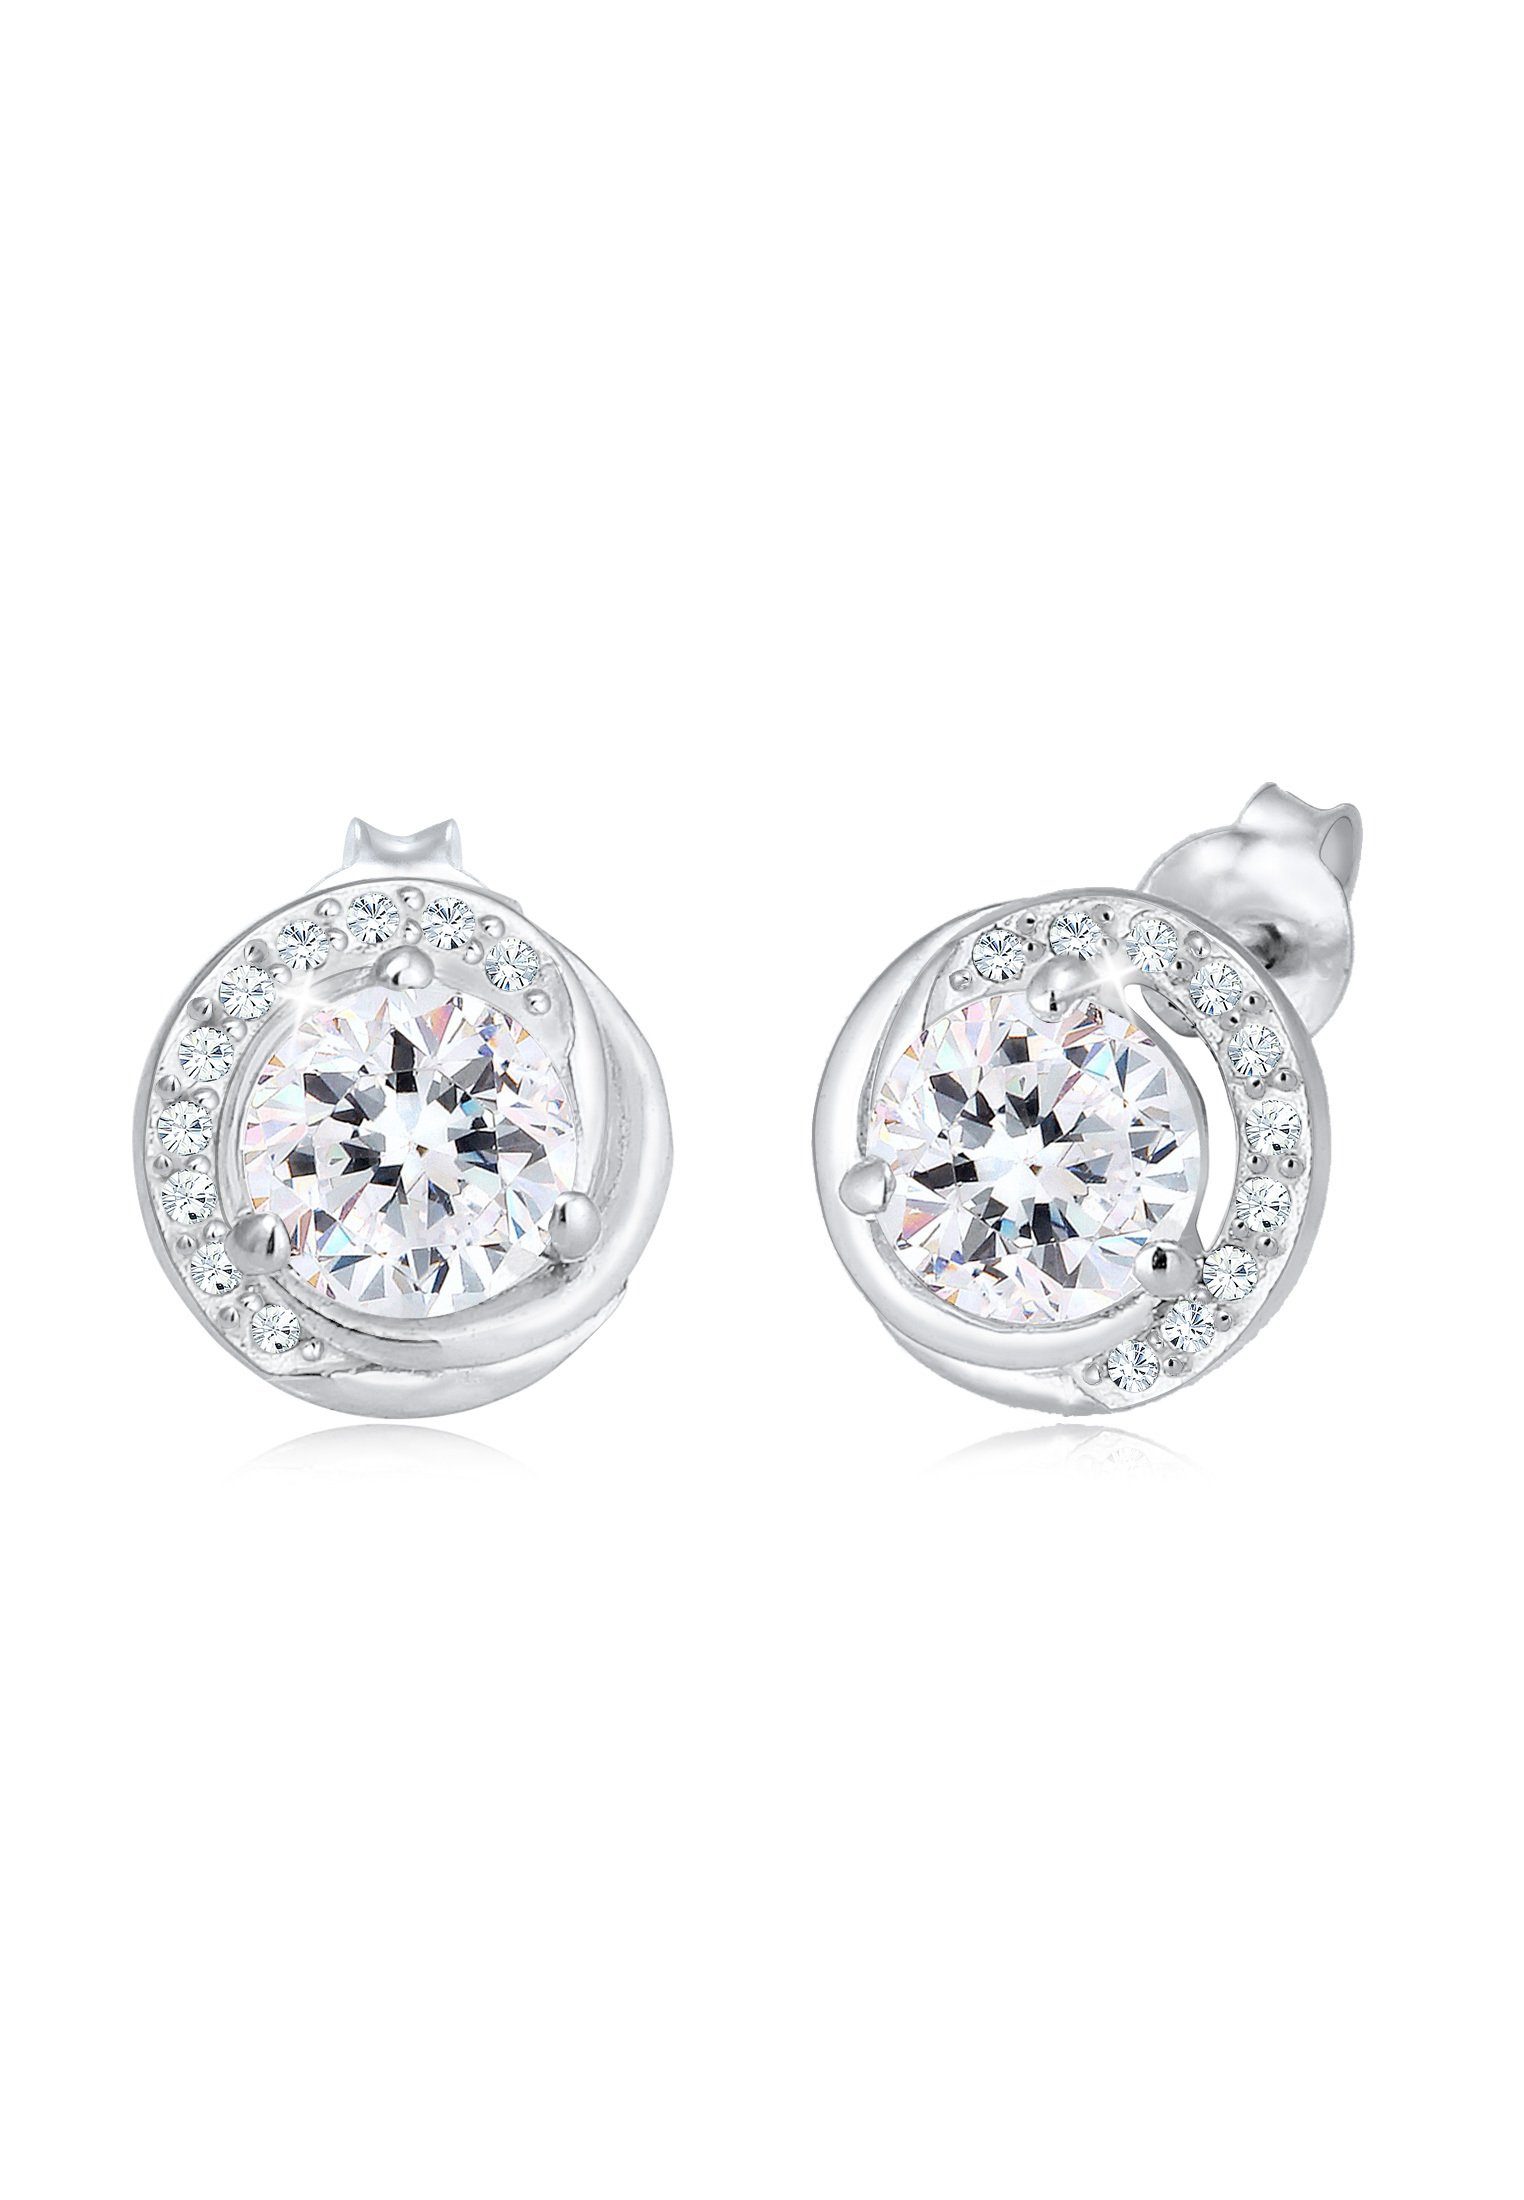 [Ich mag das] Elli Paar Ohrstecker Stecker Kreis Kreis Sterling aus Geo 925er Silber, Ohrringe Elegante 925 Silber Kristalle